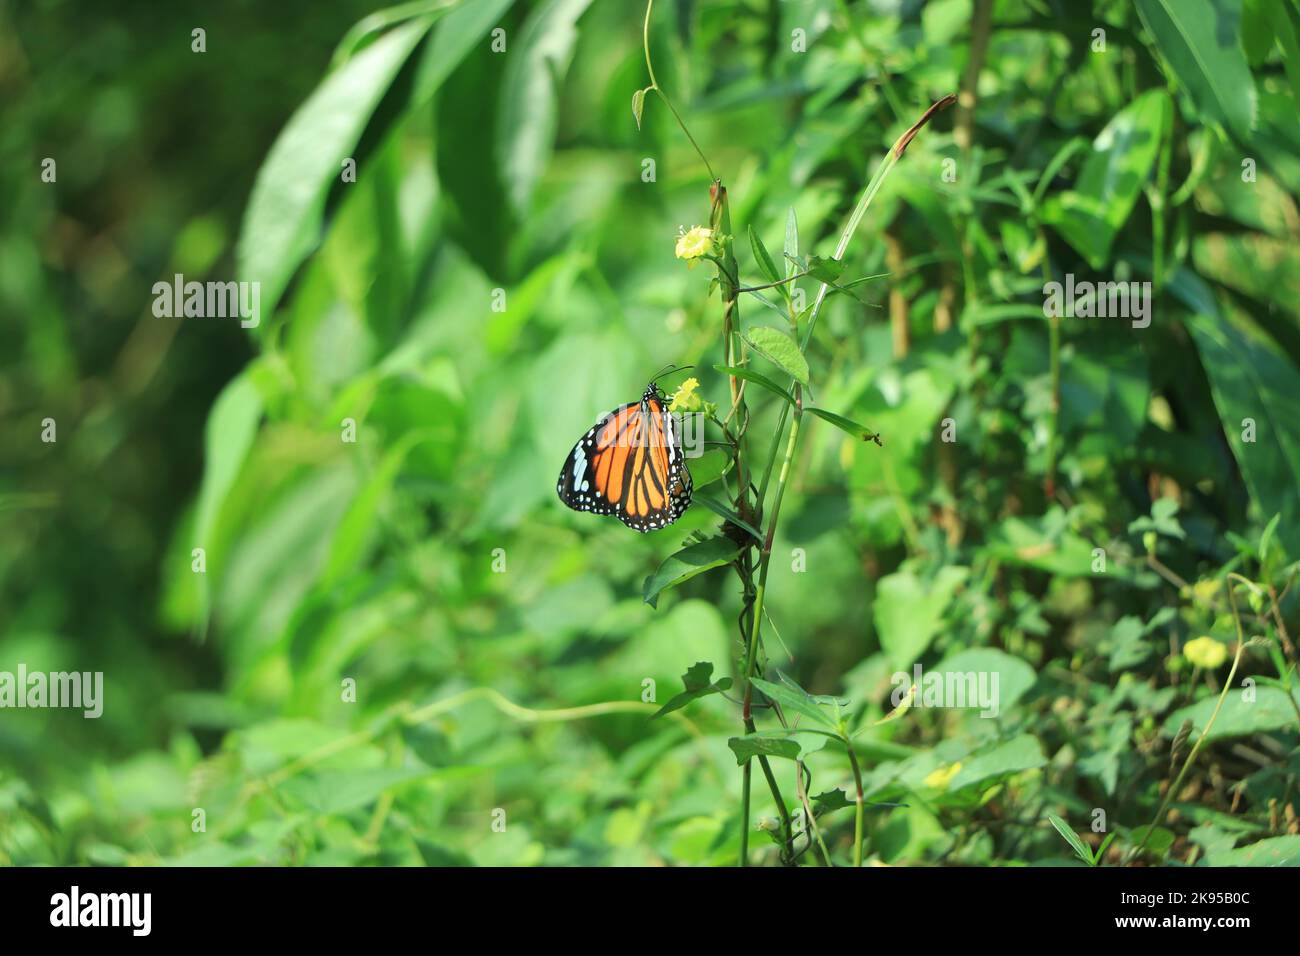 Monarch Danaus plexippus, Schmetterling in der Natur Lebensraum. Schönes Insekt aus Mexiko. Schmetterling im grünen Wald. Stockfoto